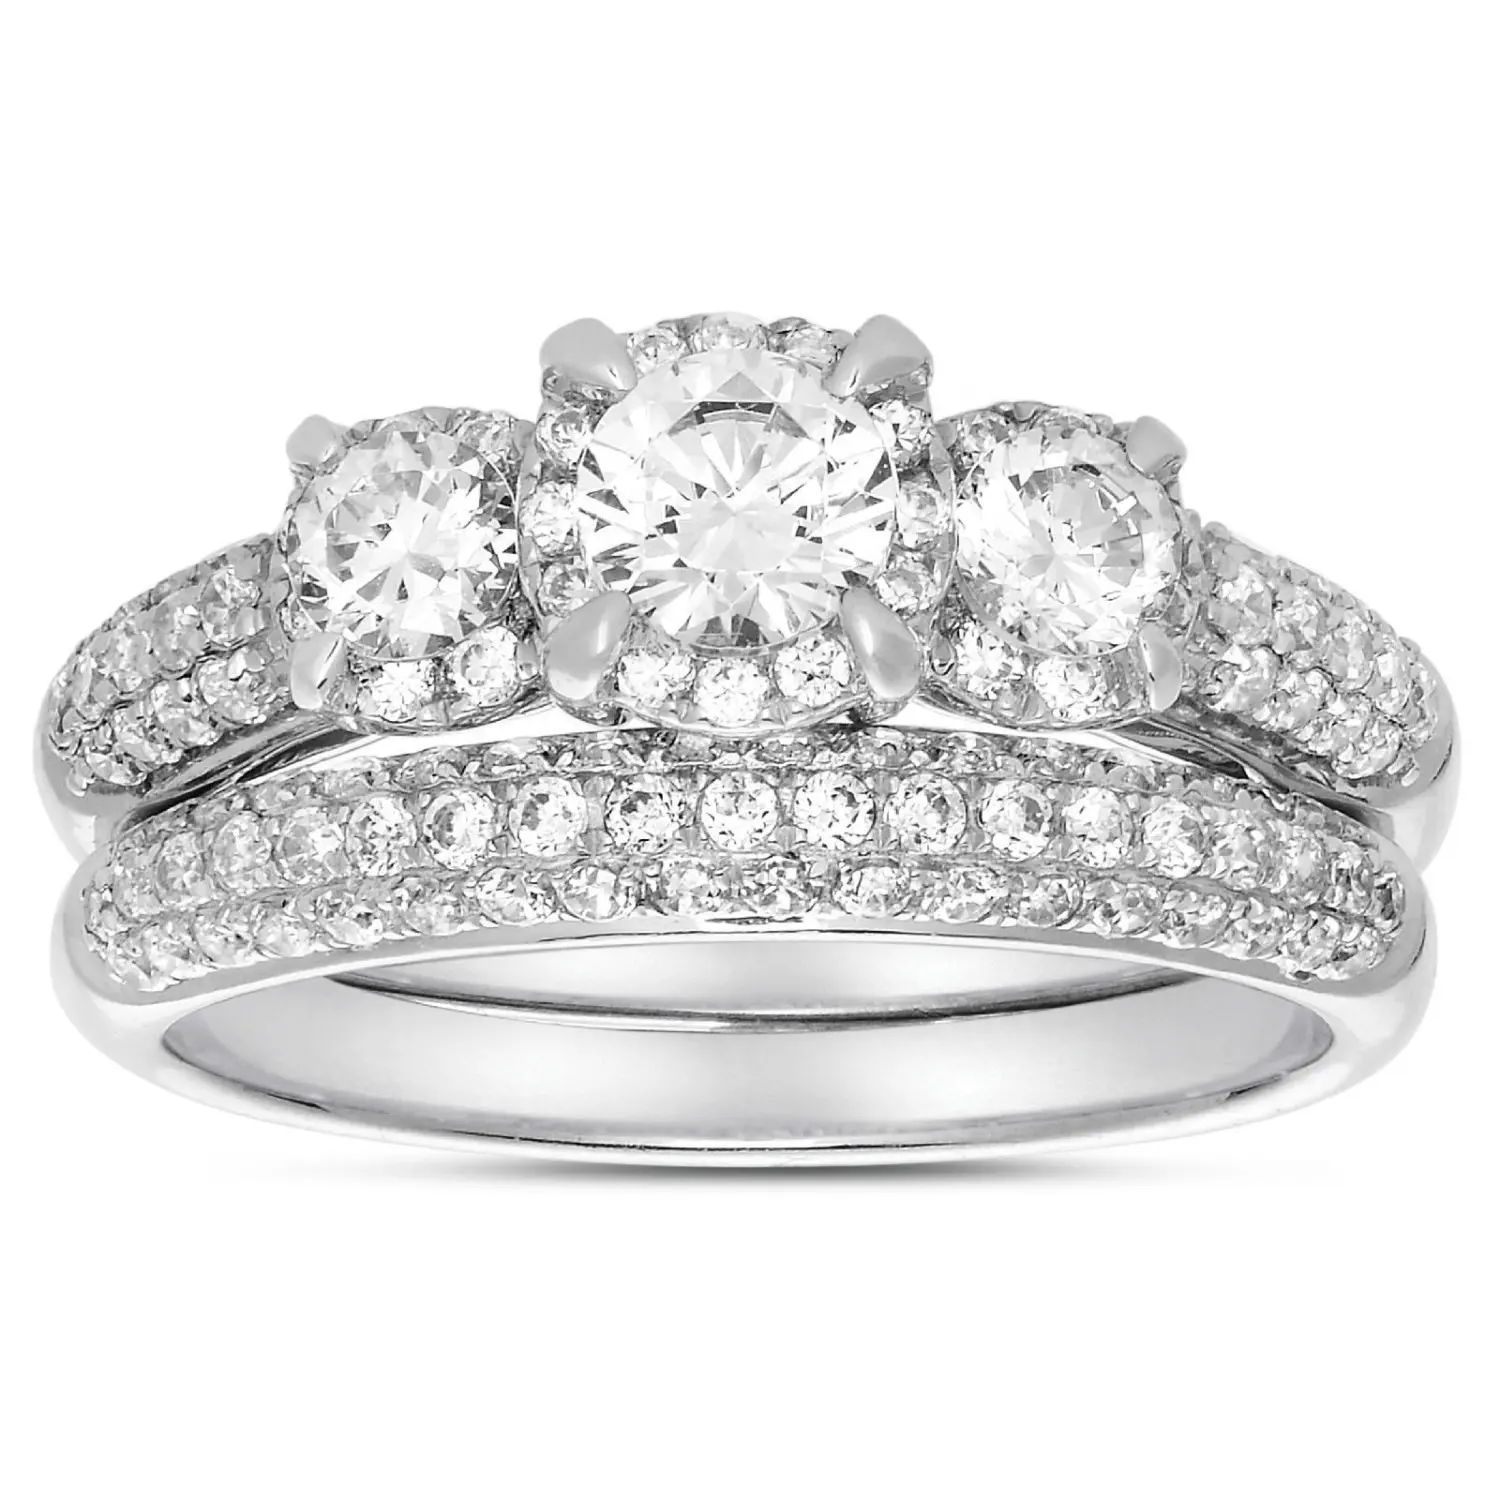 Gli anelli a mano da sposa in pietra a tre pietre con taglio brillante rotondo in argento 925 più economici hanno impostato il prezzo del marchio dei gioielli